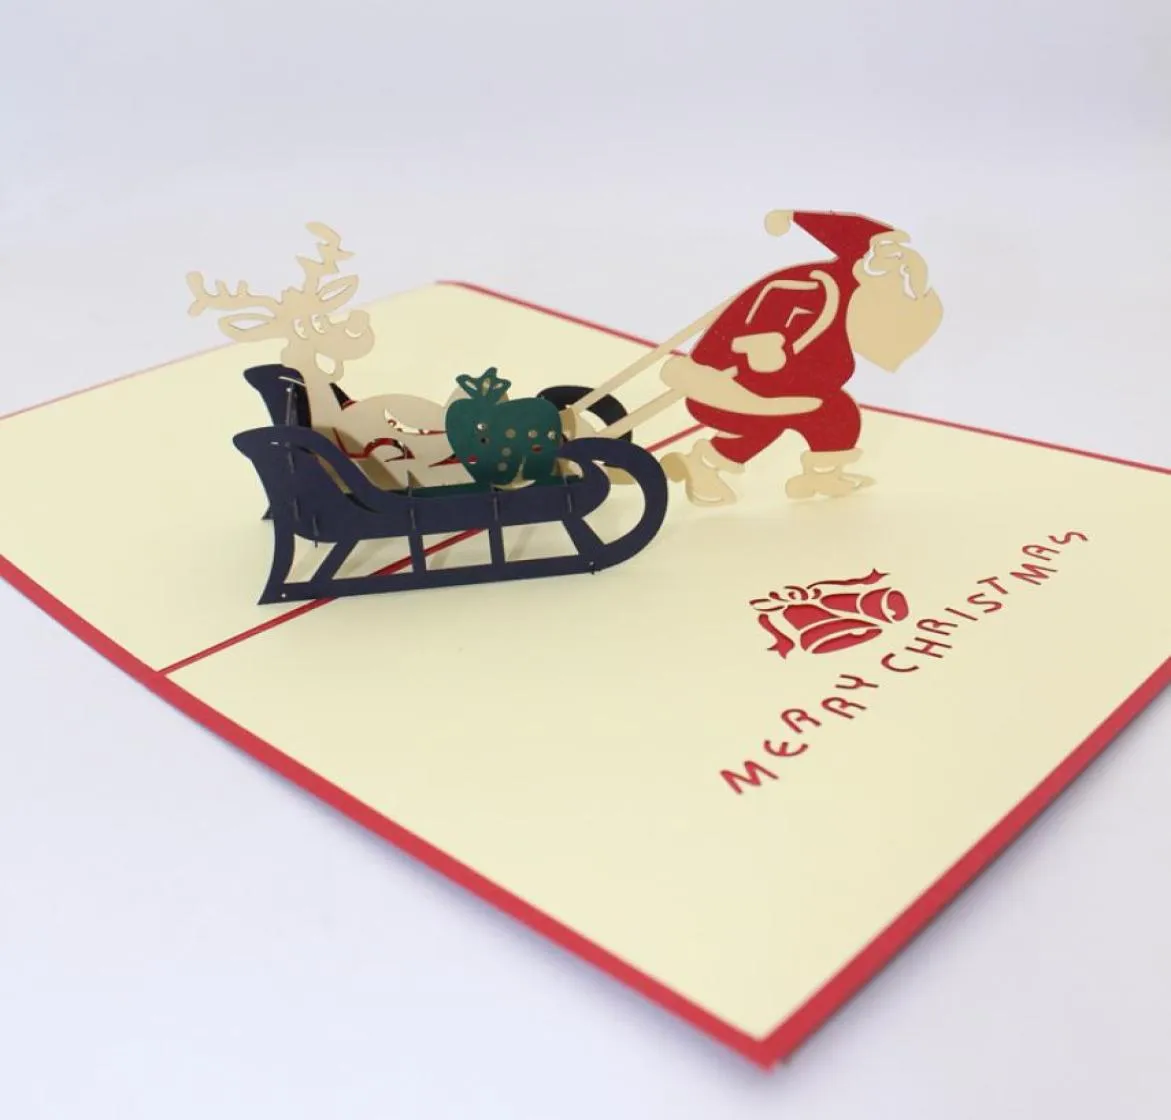 Faire des cartes de vœux 3D Pop Up Merry Christmas Creative 3D Cartoon Santa Ride Paper Card Festive Party Supplies7522012